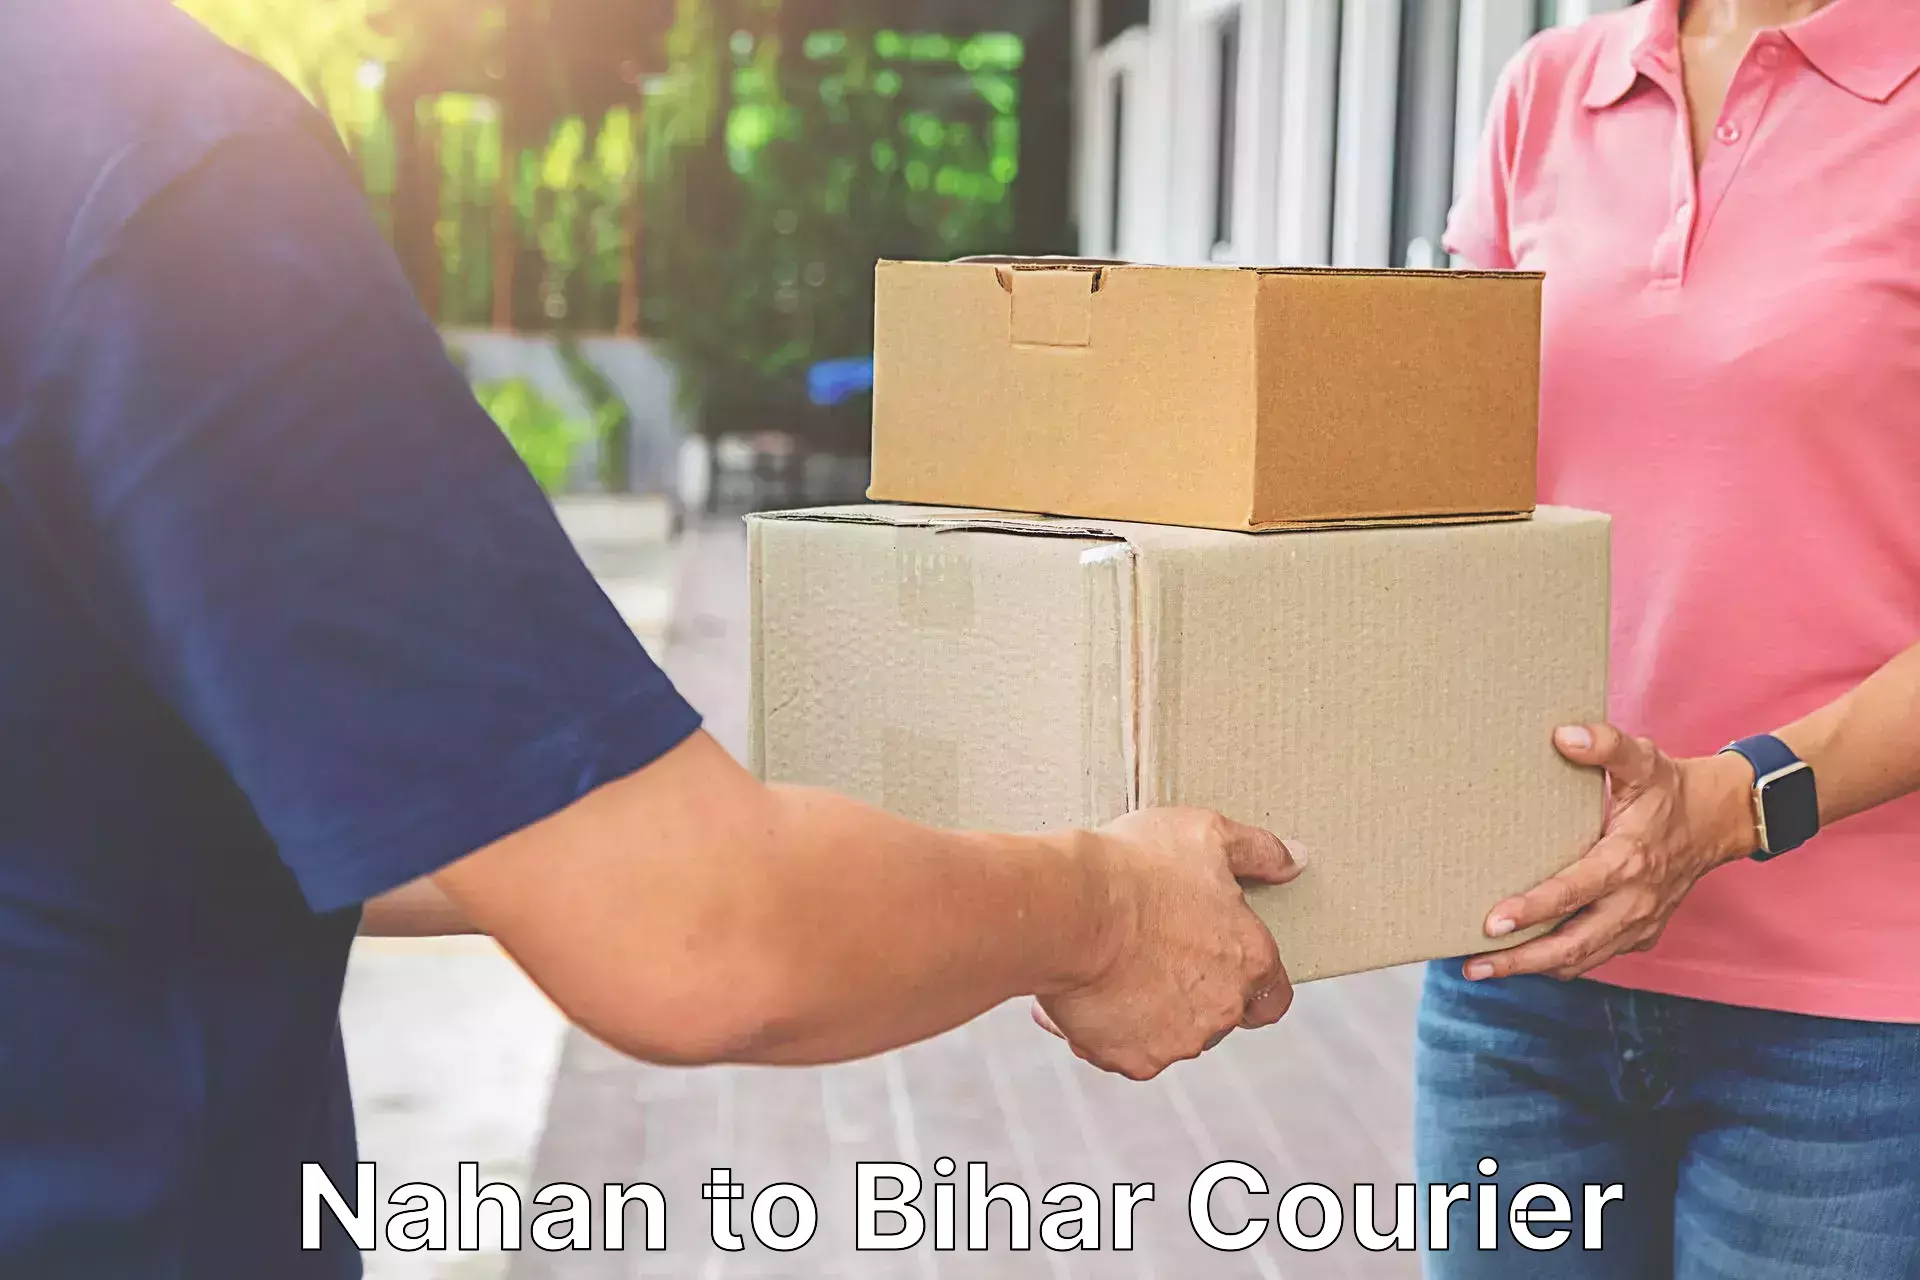 Courier service comparison Nahan to Gopalganj